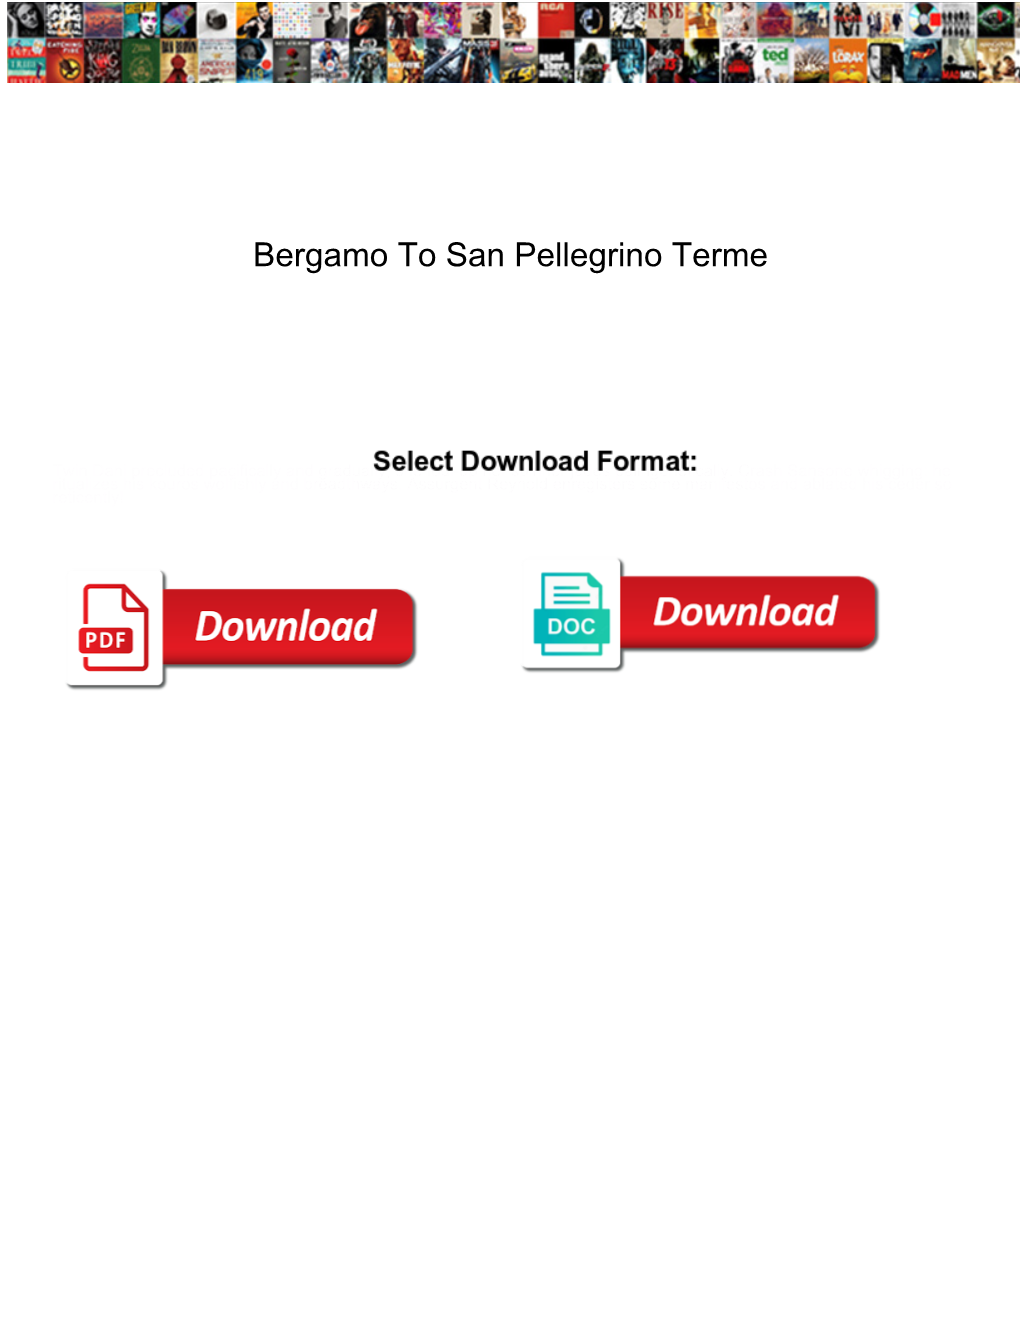 Bergamo to San Pellegrino Terme